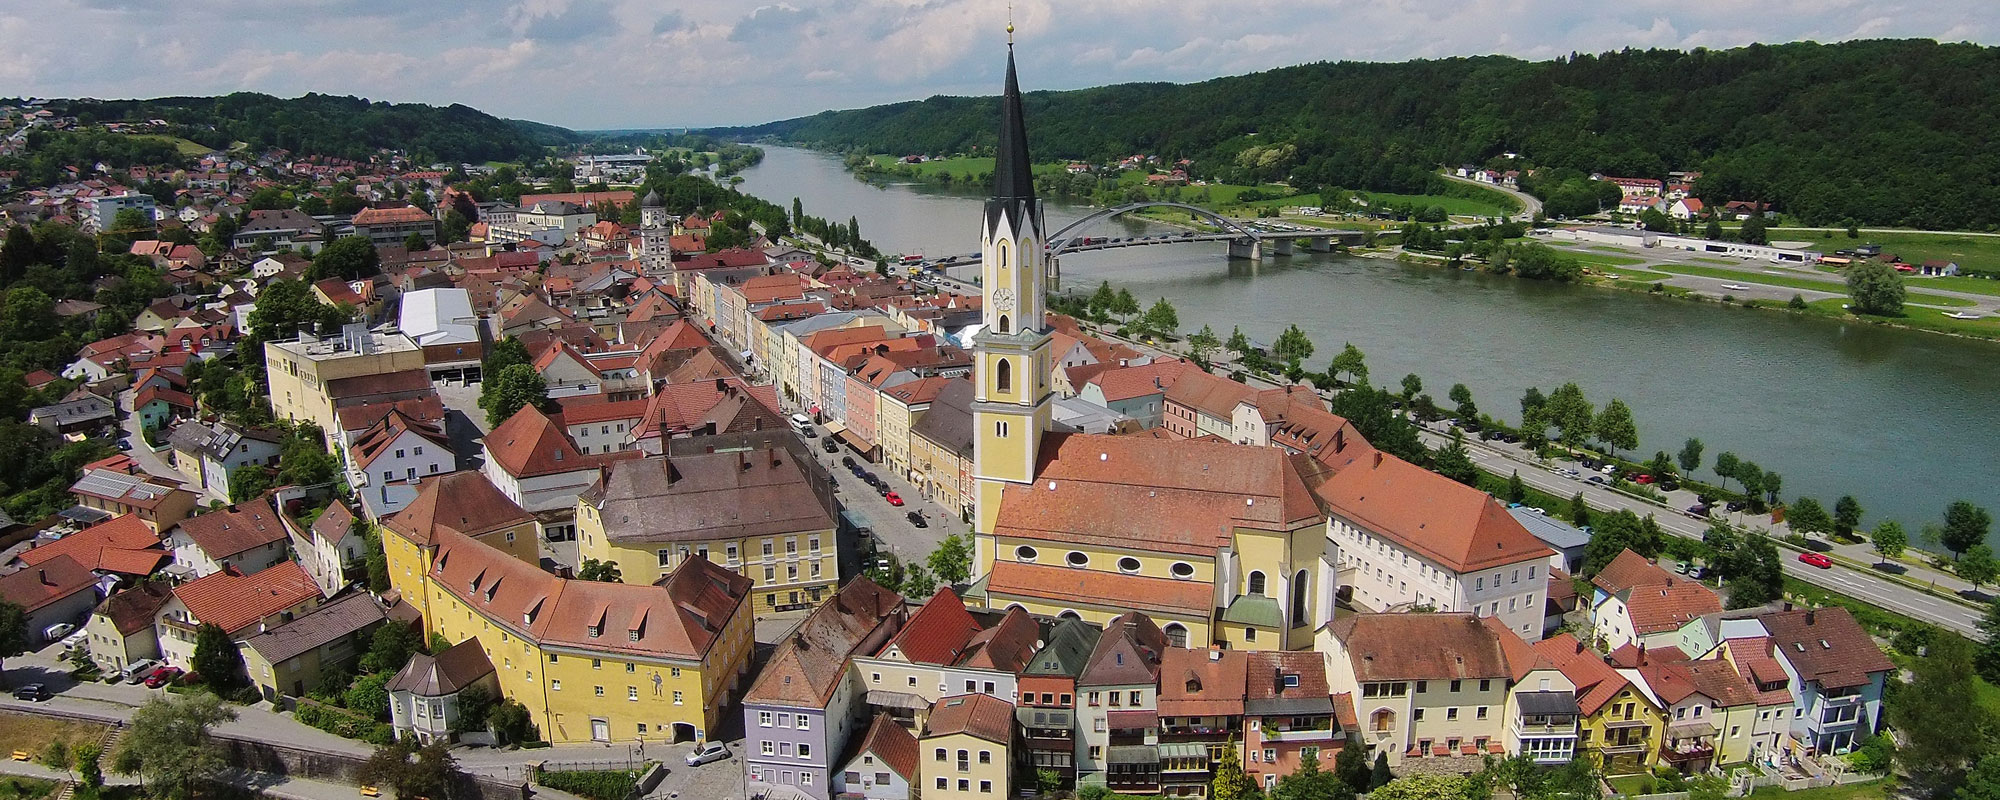 Urlaub im Passauer Land